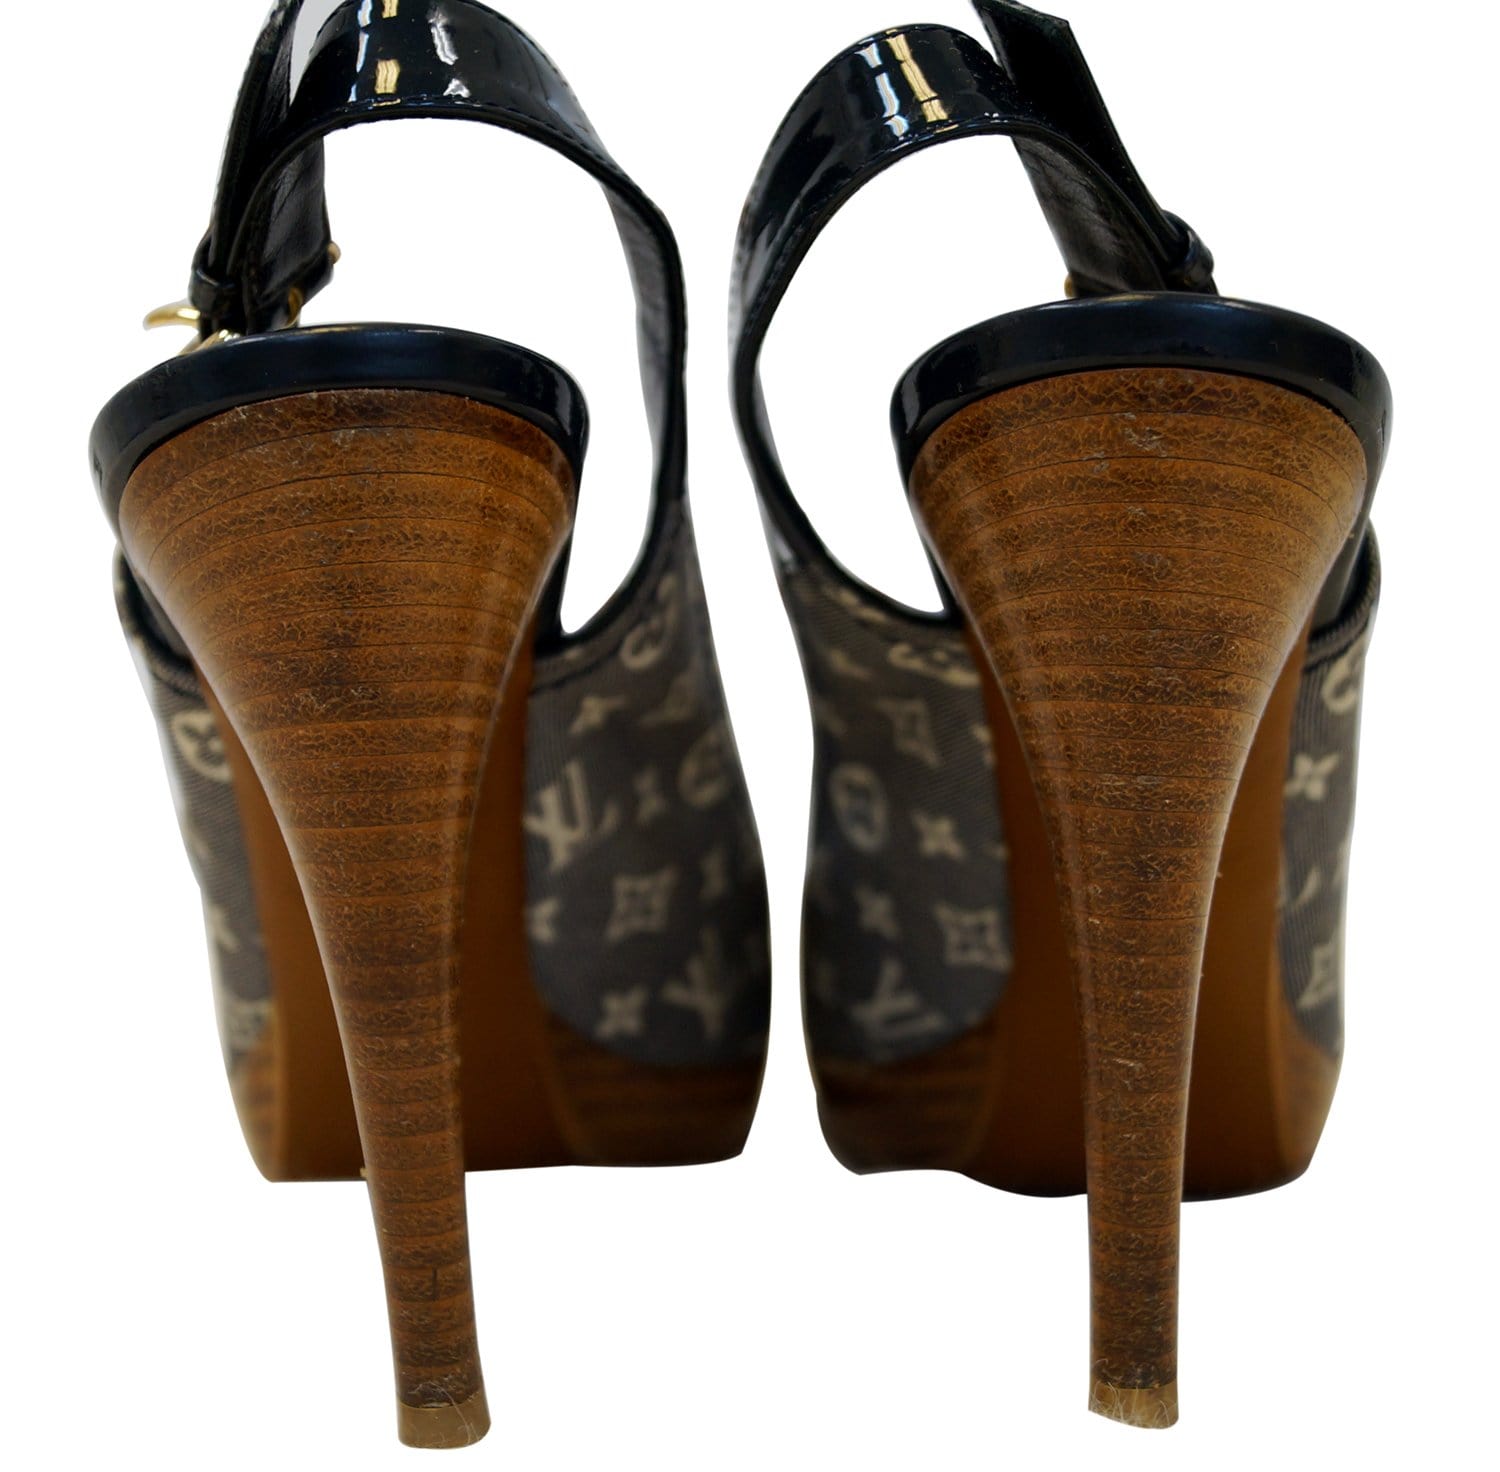 Louis Vuitton Satin Slingback Sandals - ShopStyle